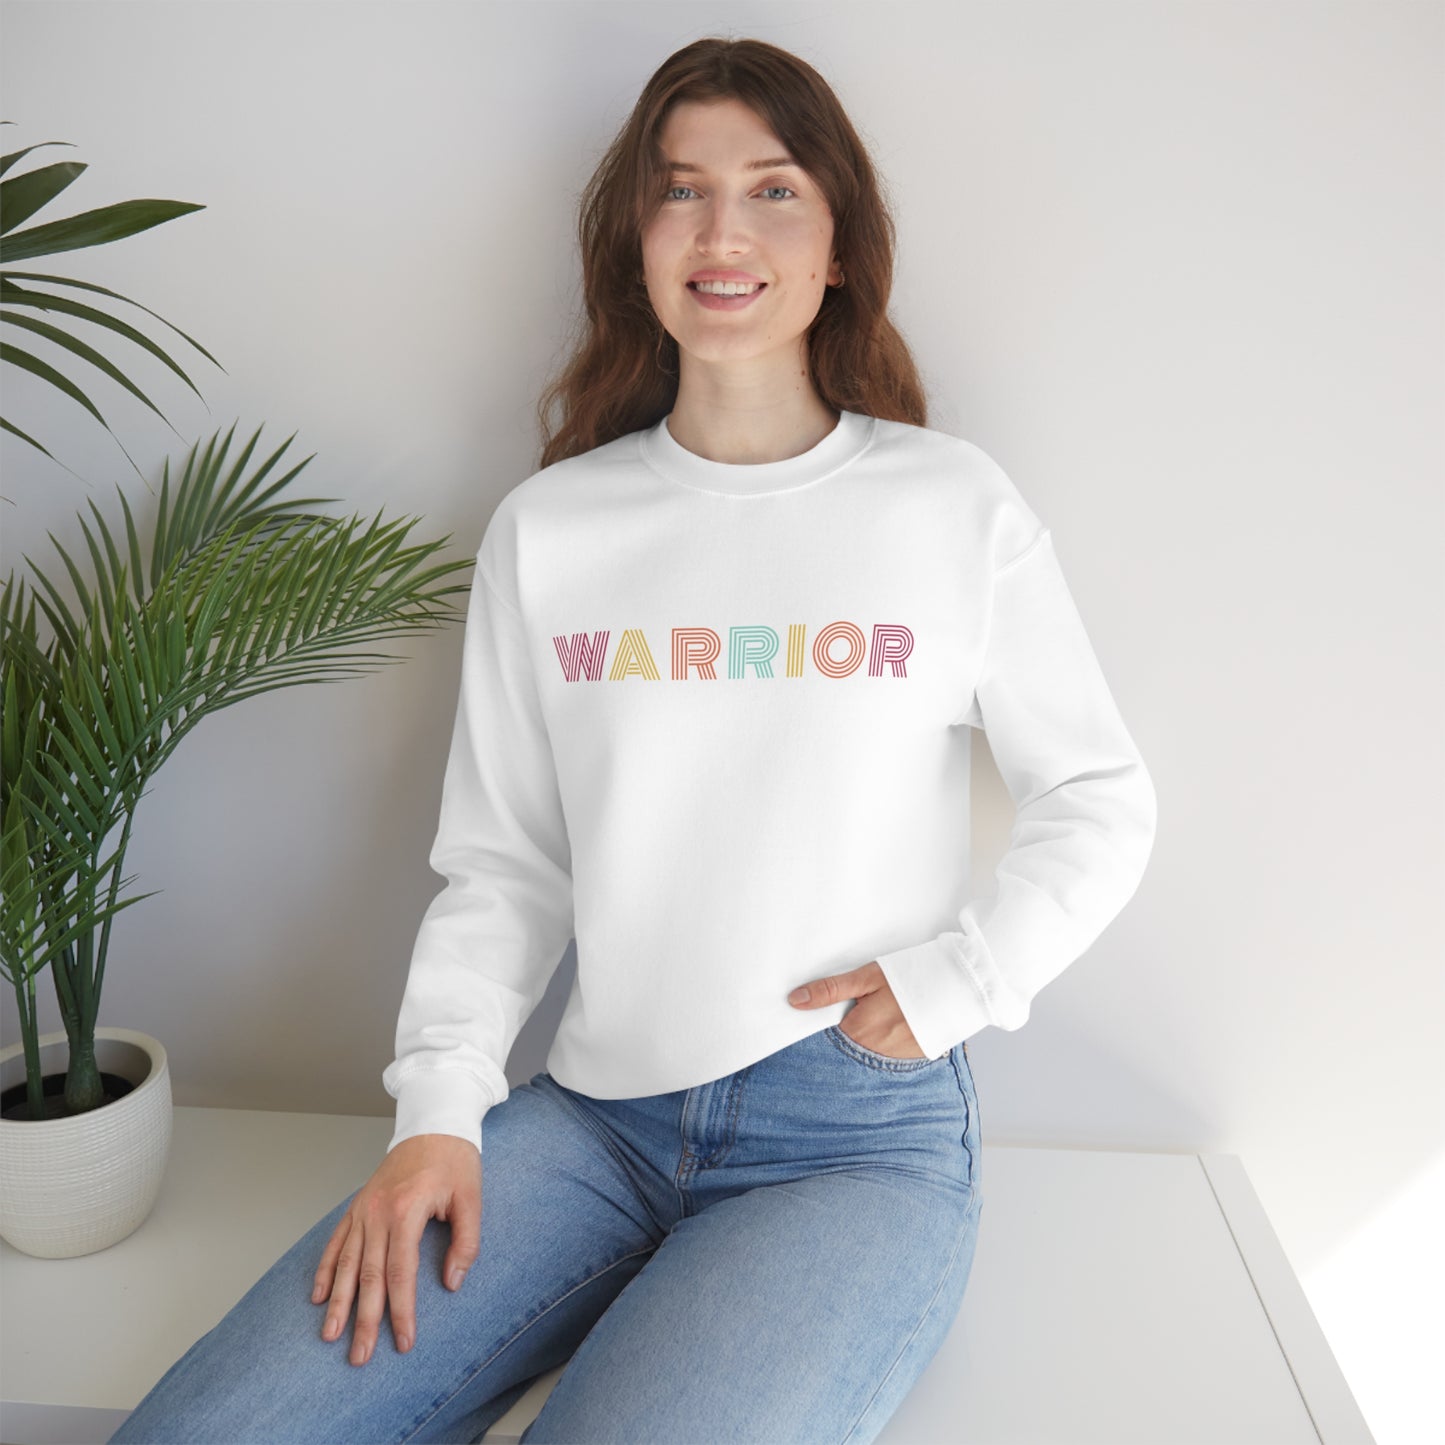 Warrior Sweatshirt